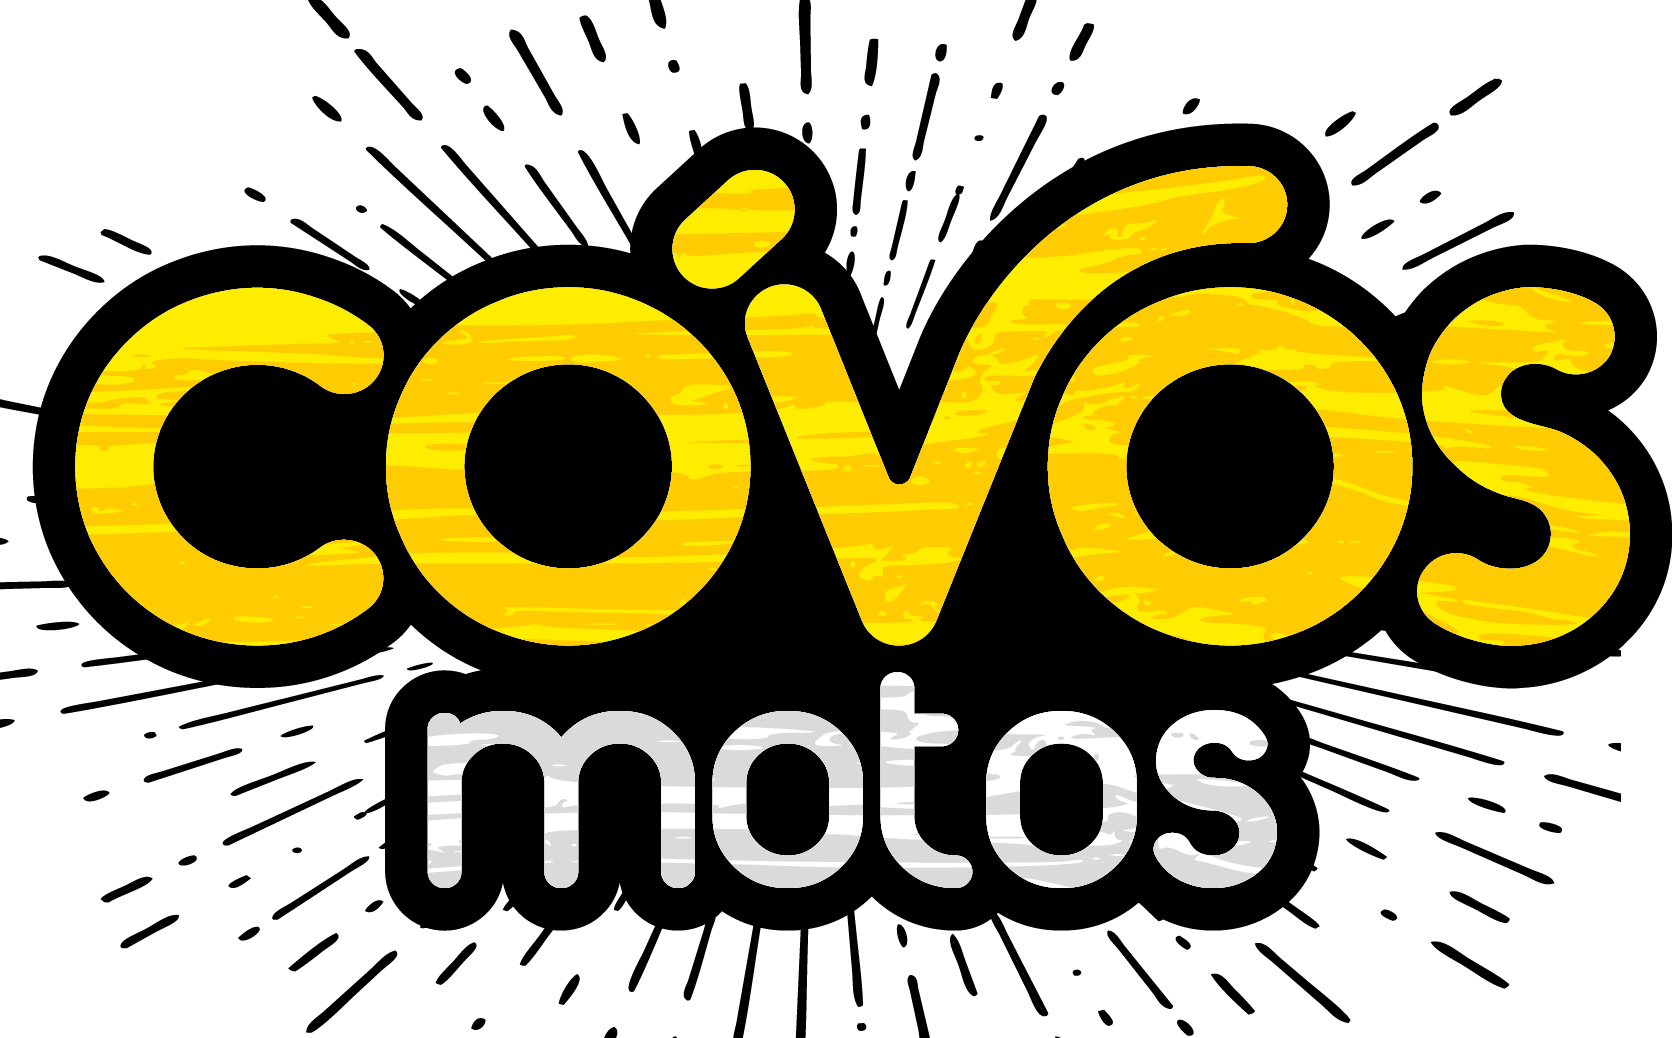 Covos Motos